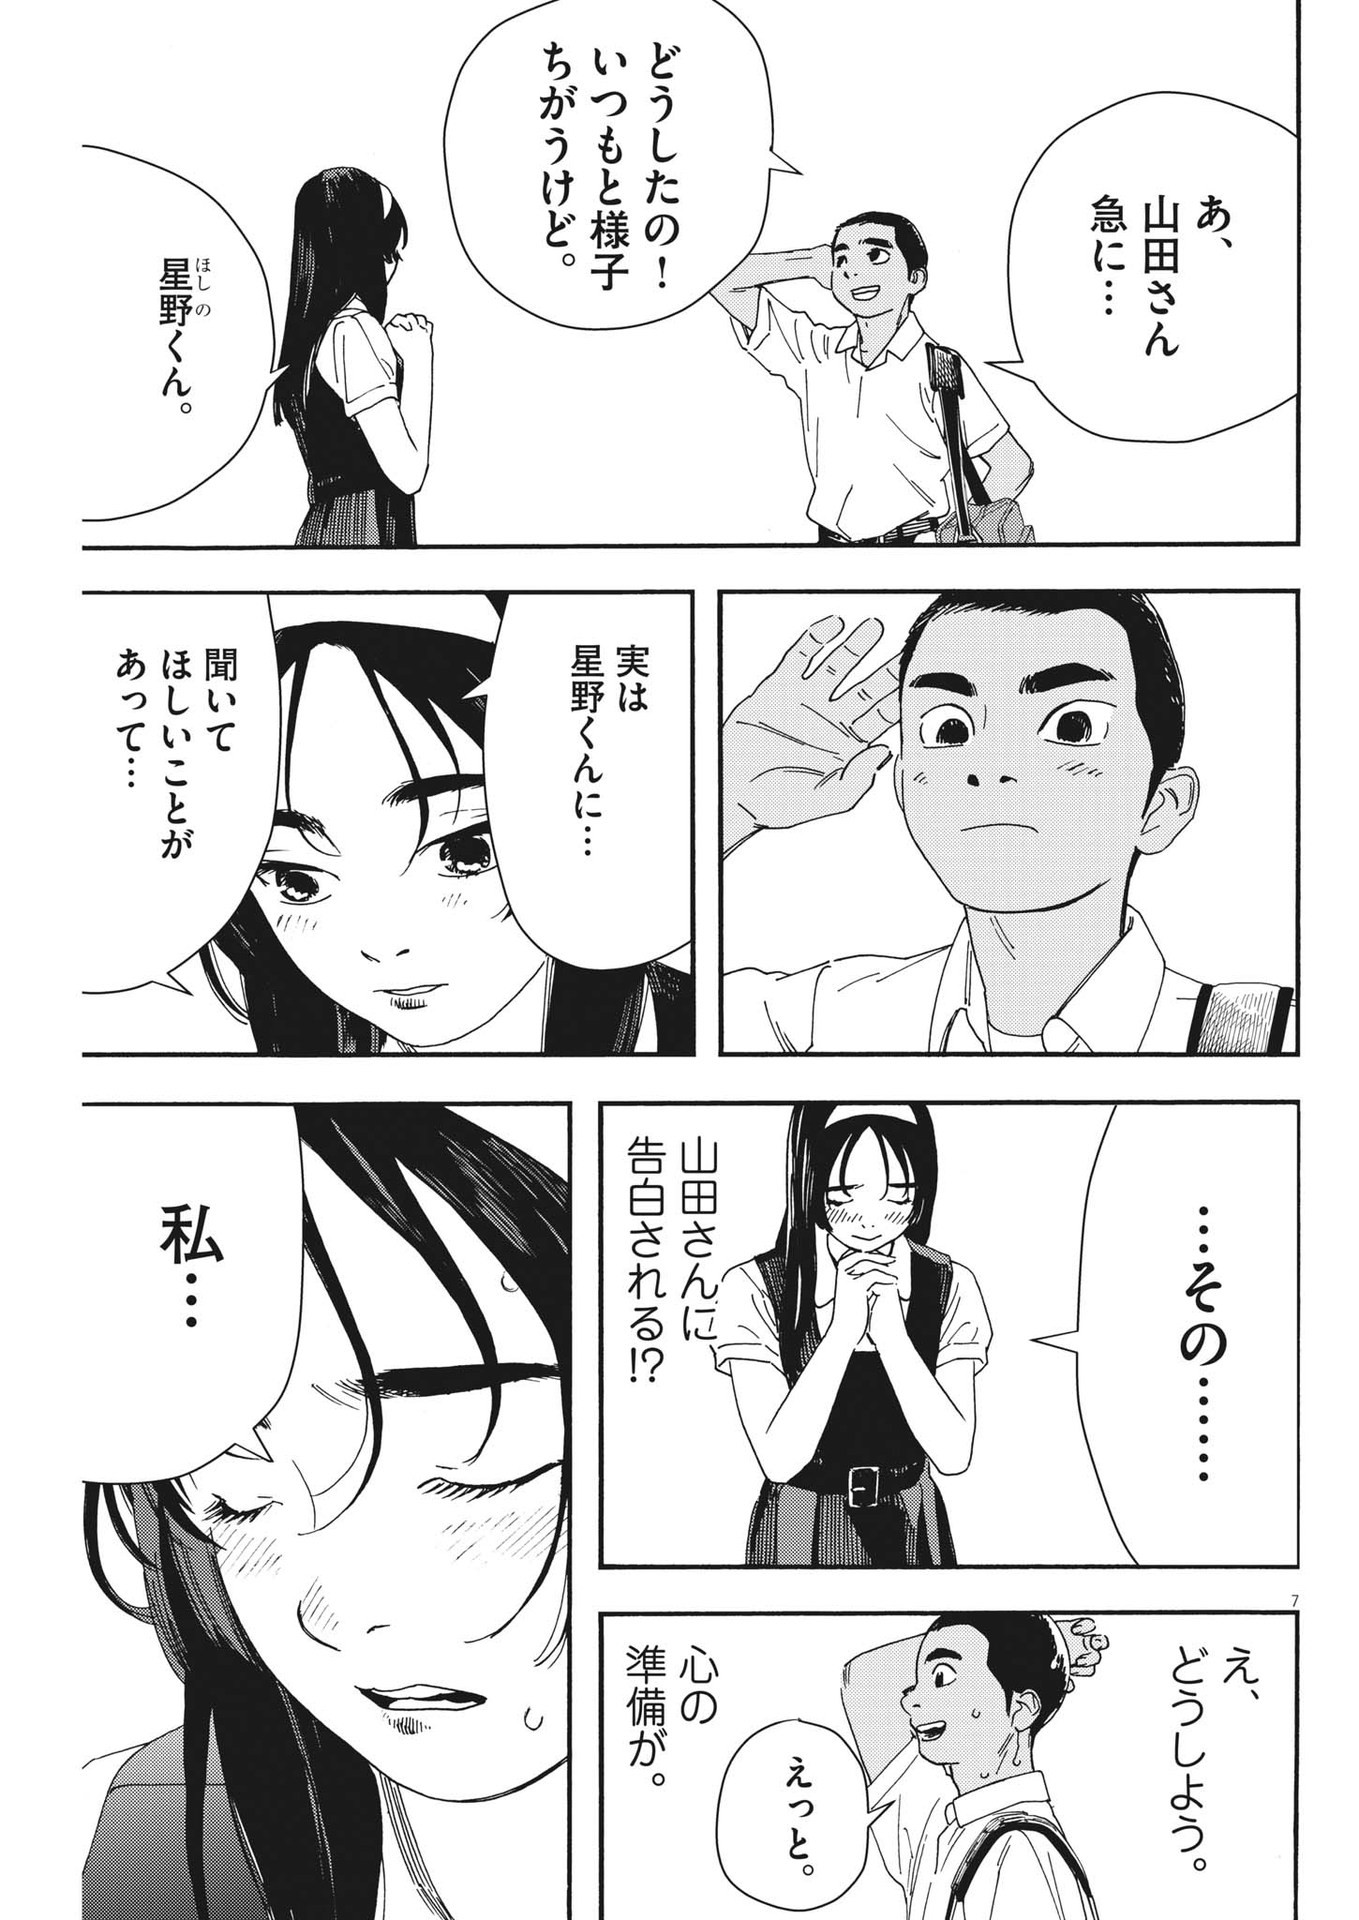 Hoshino-kun, Shitagatte! - Chapter 4 - Page 7